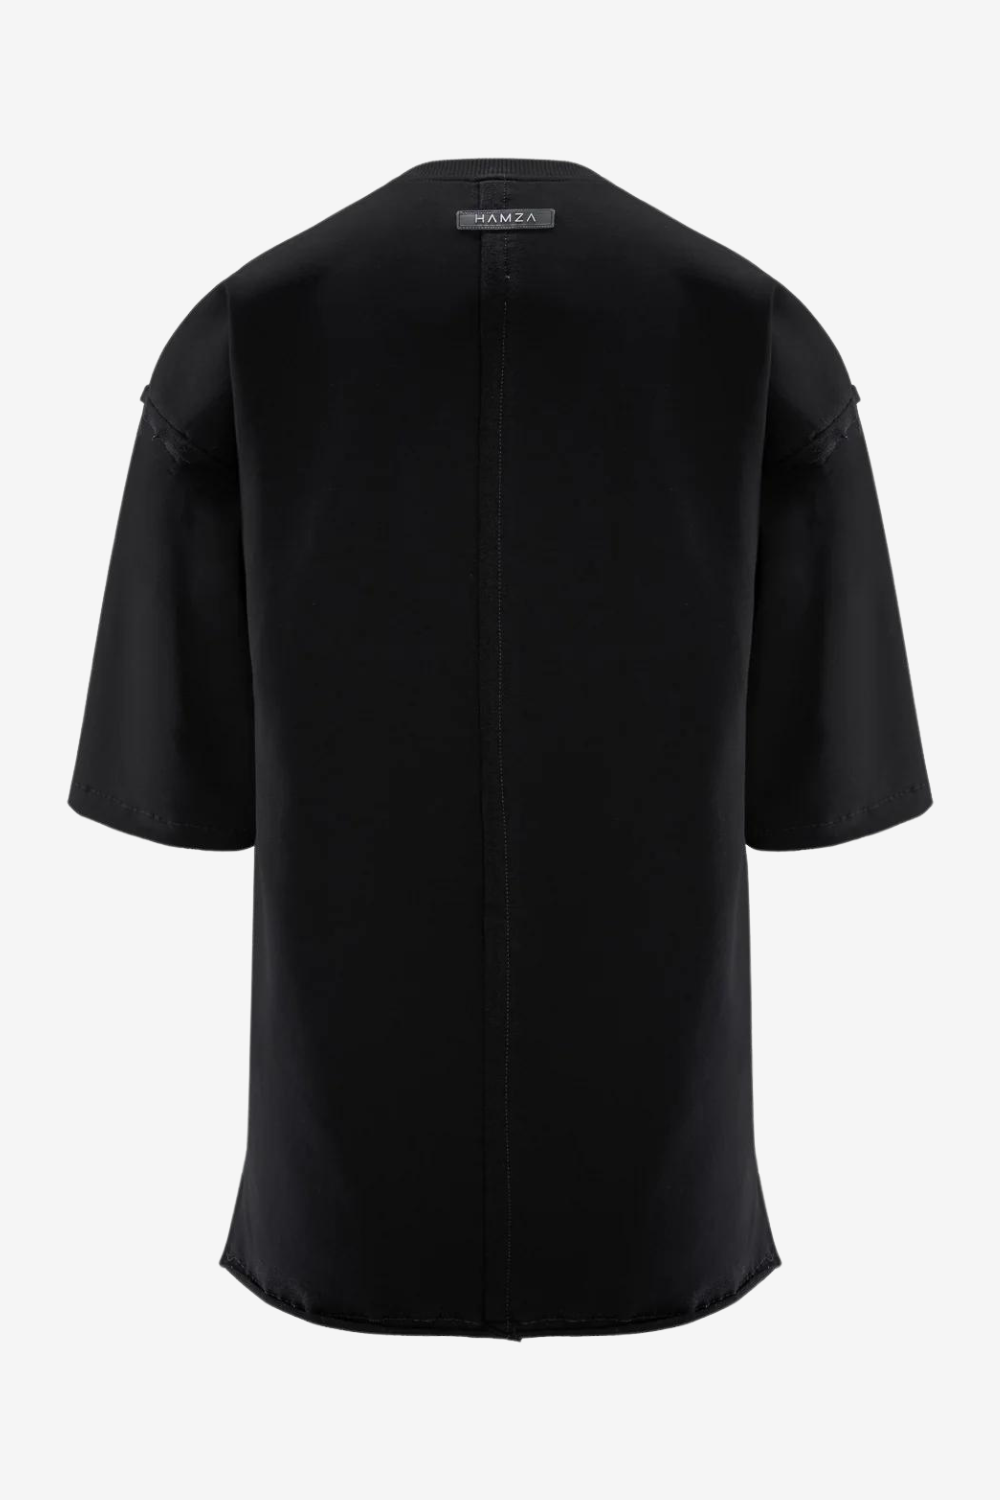 Tricou bărbătesc, negru, bumbac premium, croială oversized, detalii moderne (finișaje crude, cusături decorative).